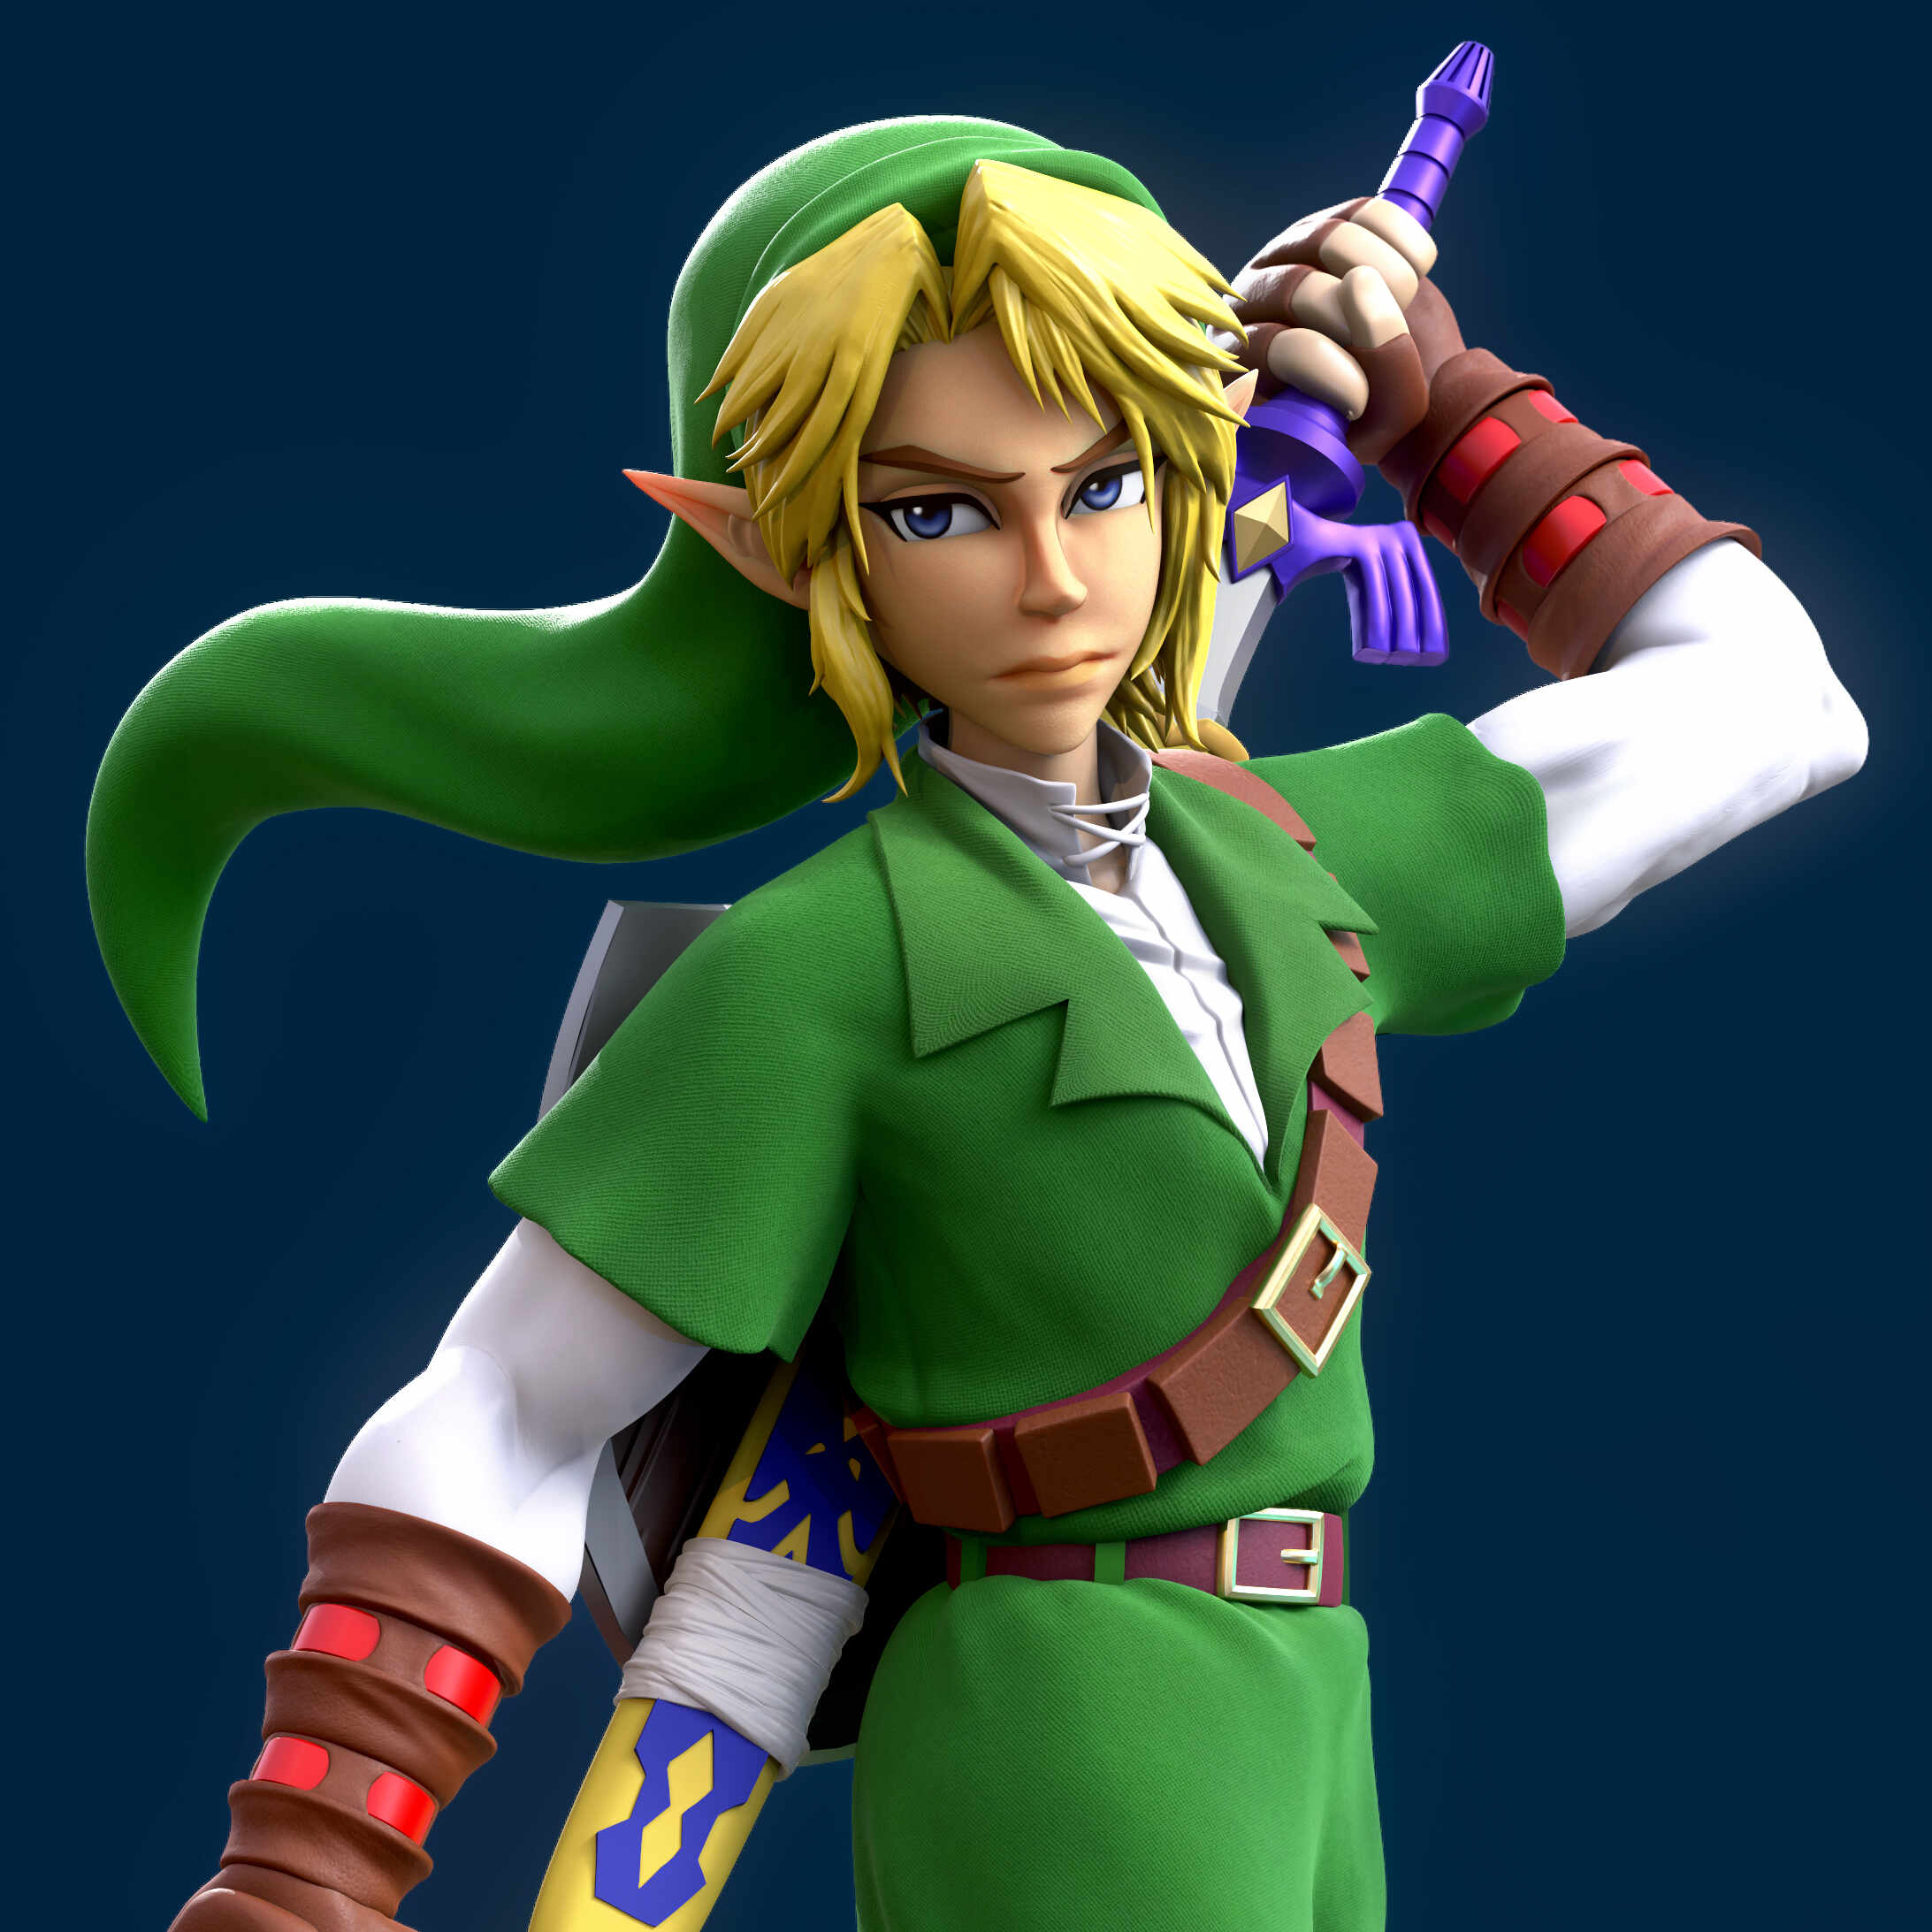 The legend of Zelda: Ocarina of Time render